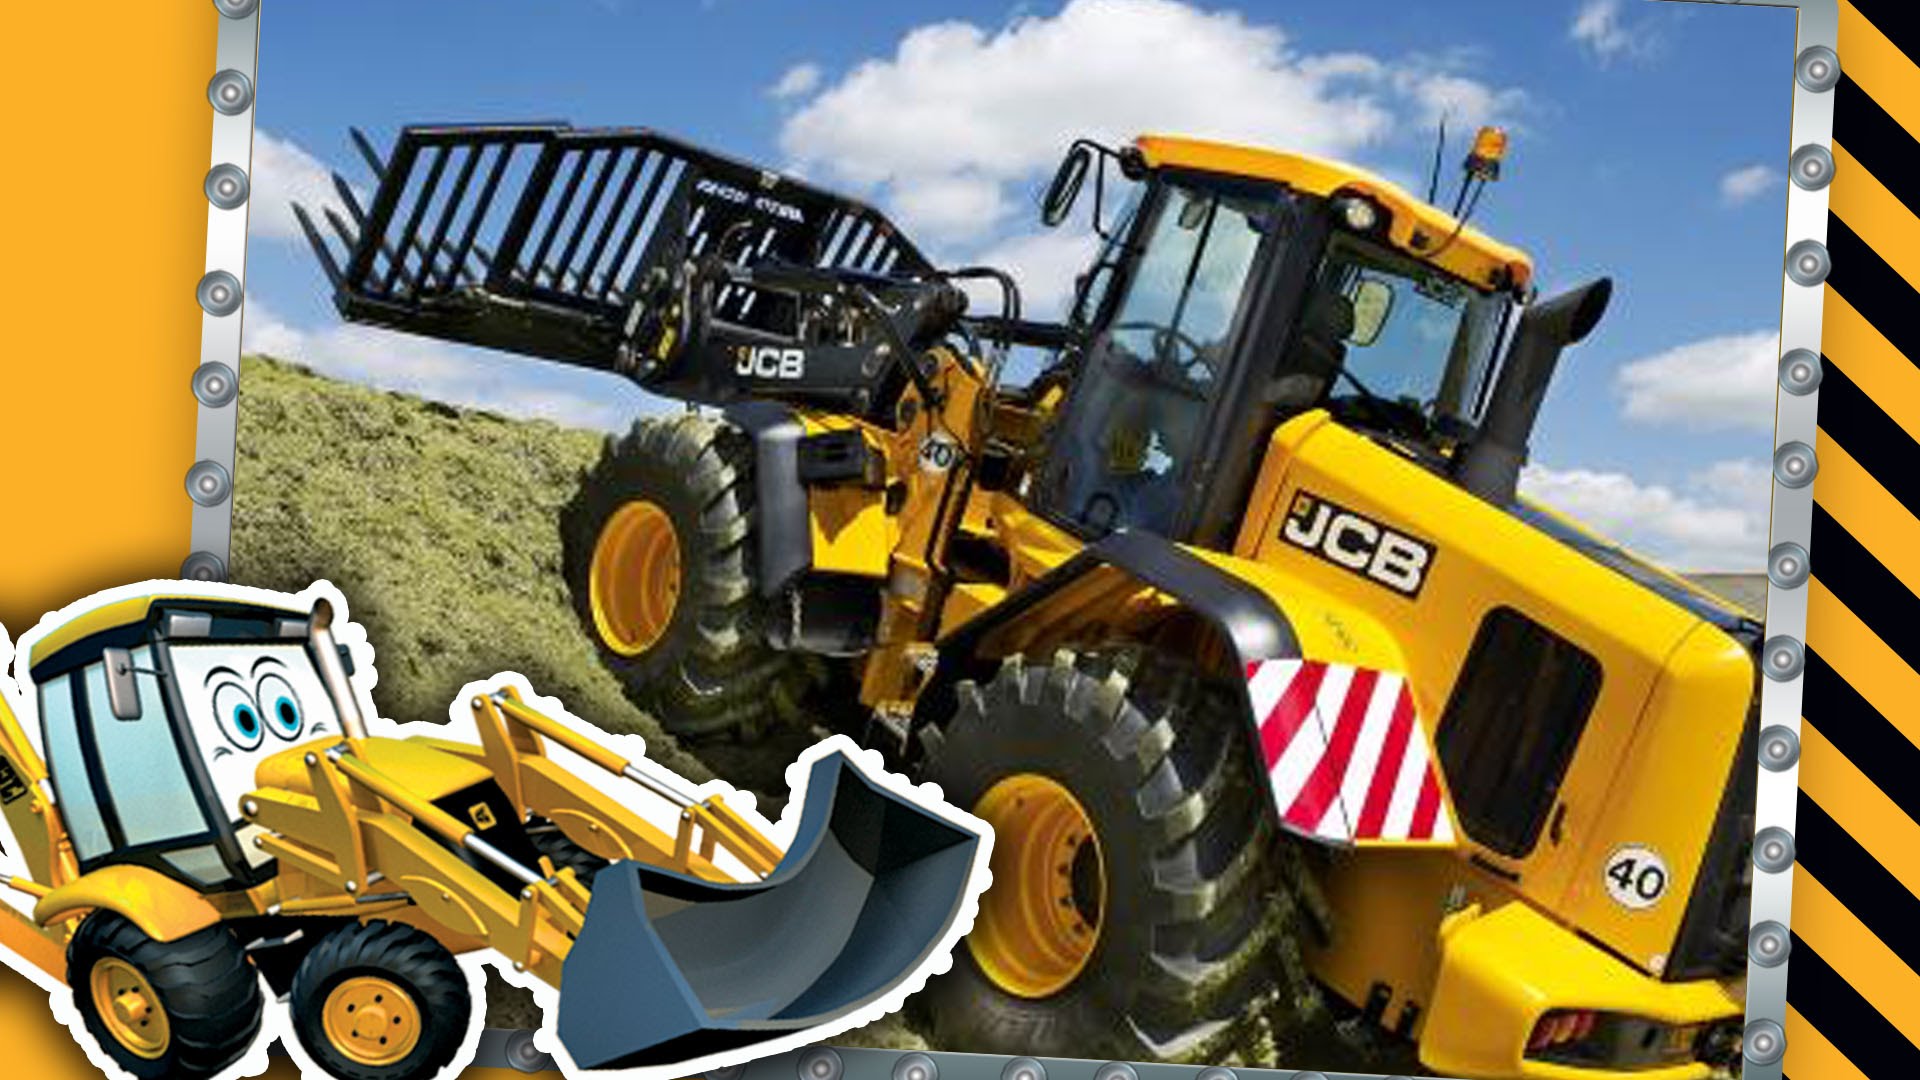 JCB Diggers On The Farm | Tractors, Diggers, Dump Trucks for ...